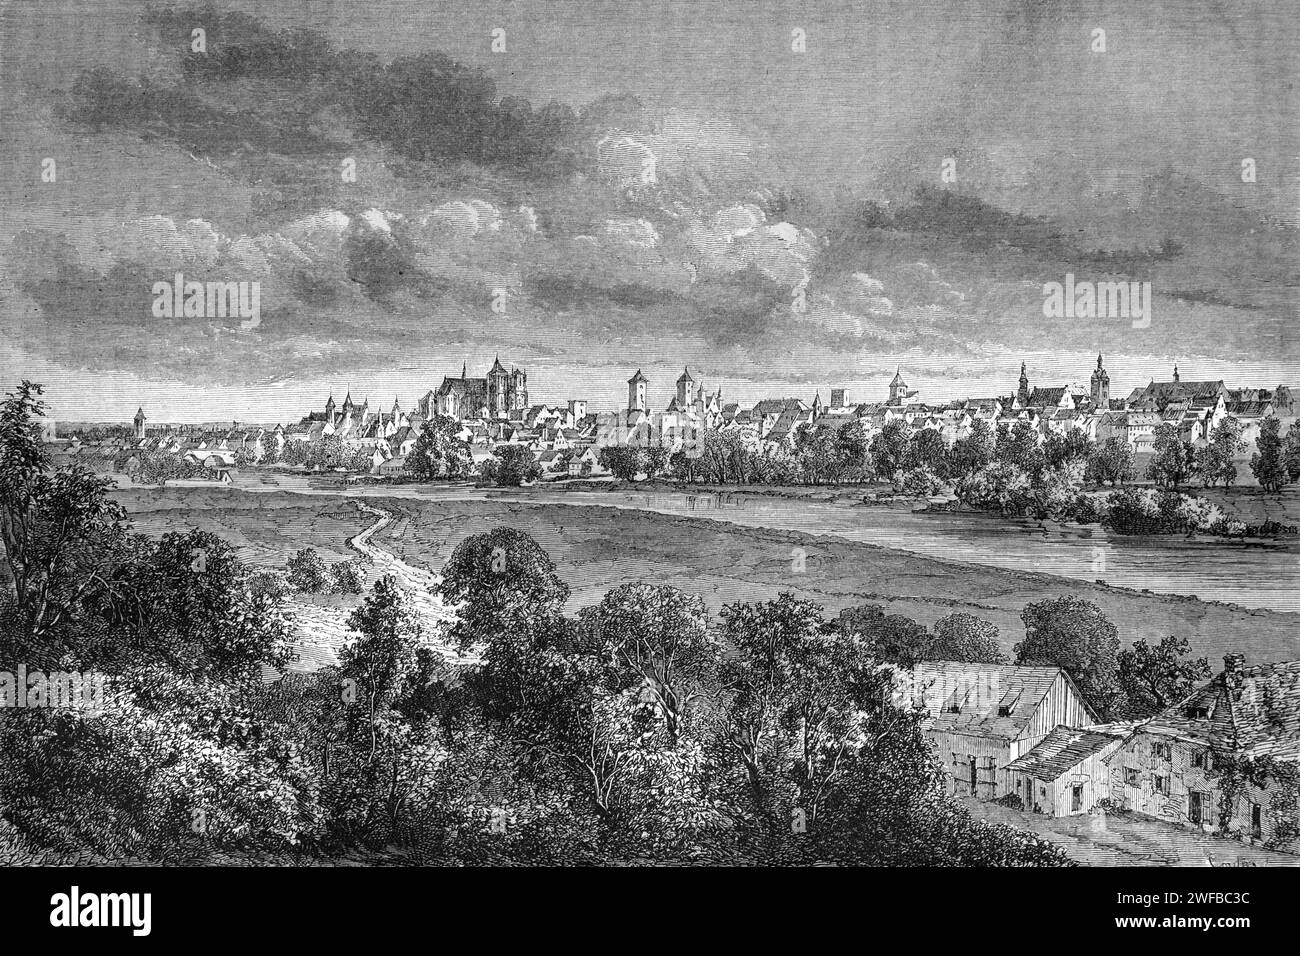 Vista panoramica anticipata o Panorama di Ratisbona, precedentemente conosciuto come Ratisbon, Baviera orientale Germania. Incisione d'epoca o storica o illustrazione 1863 Foto Stock